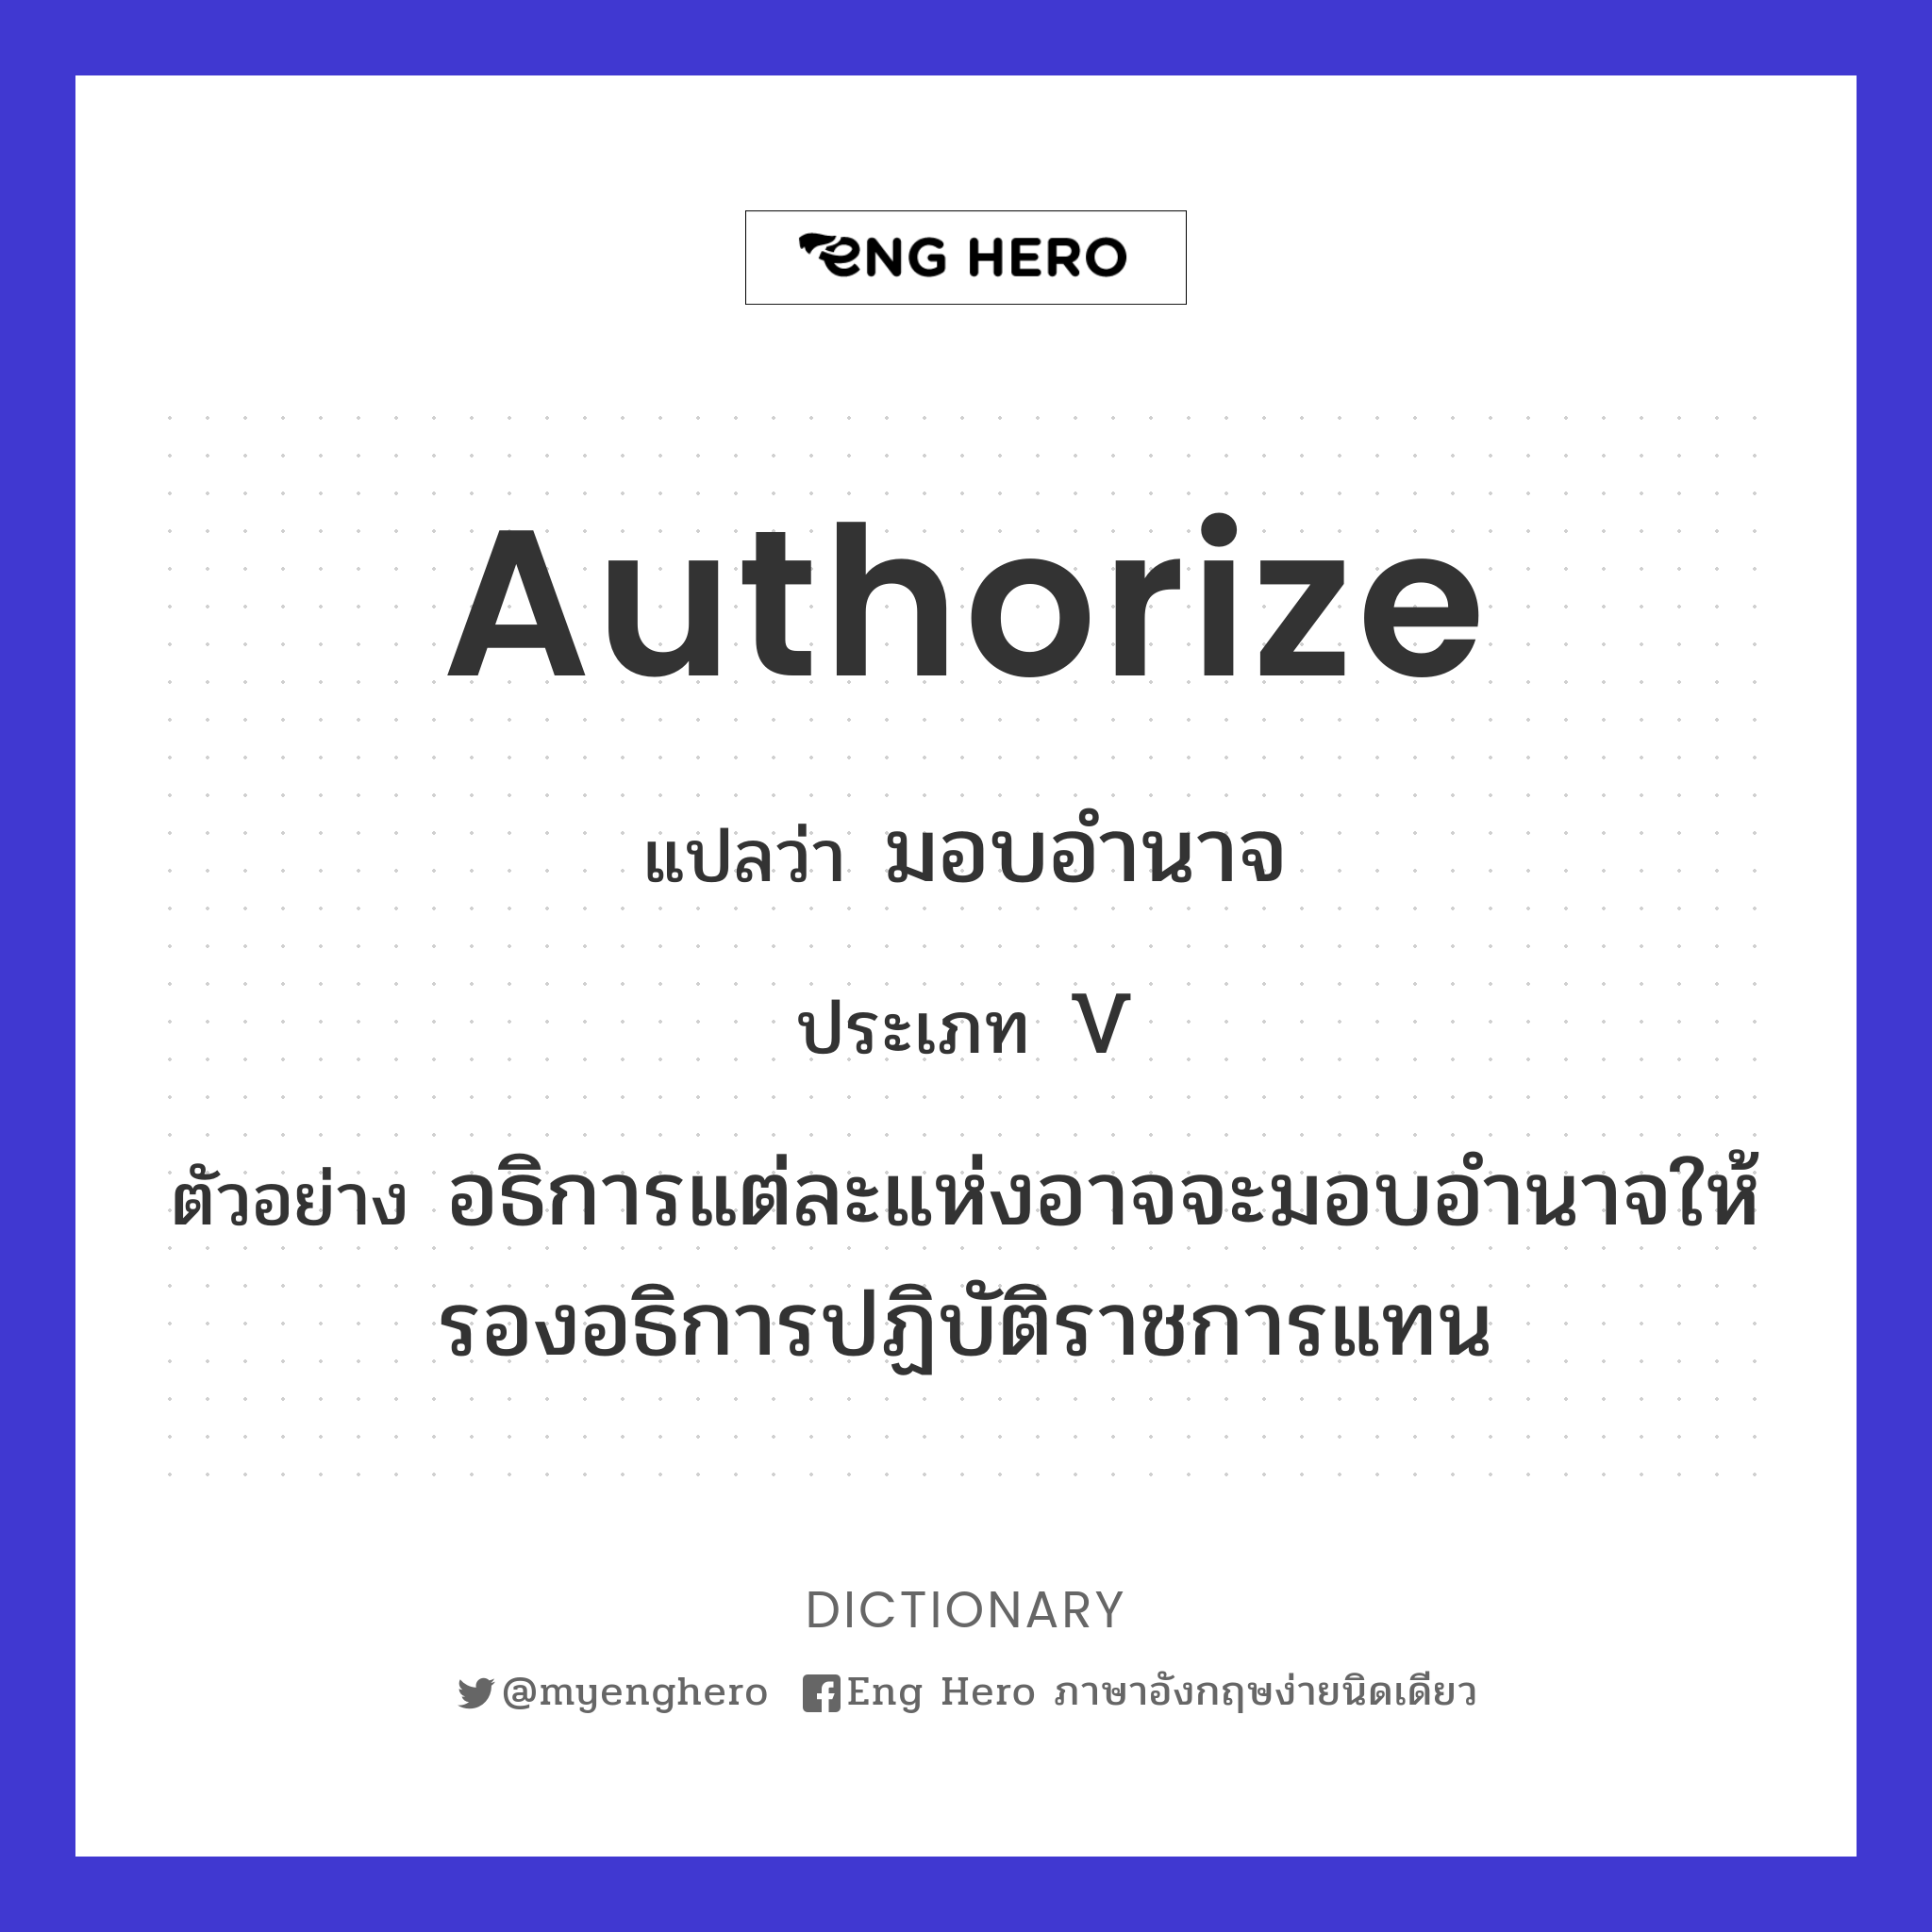 authorize